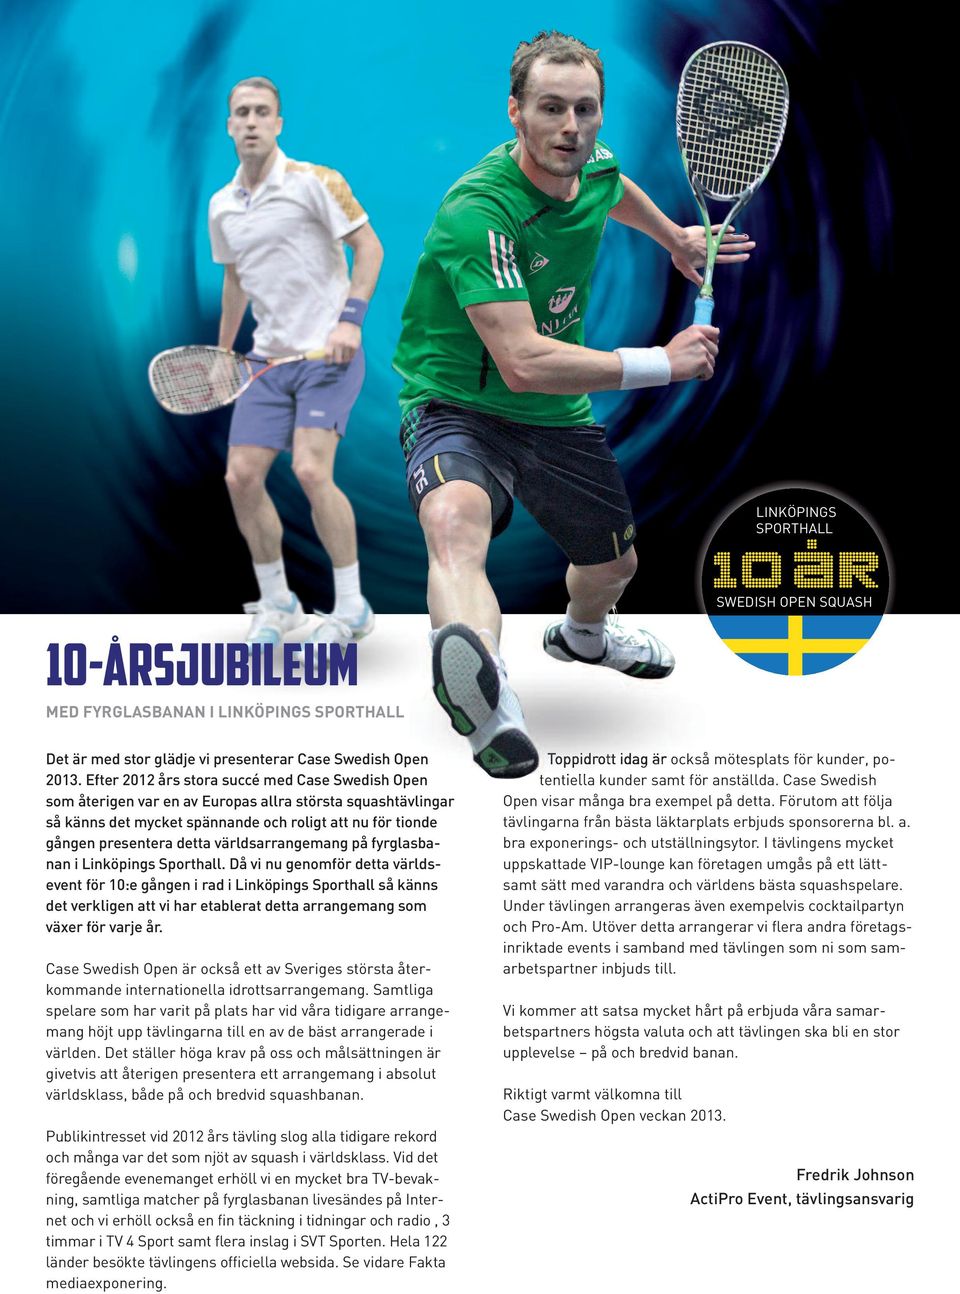 (Undantag på exponering finns). Exponering på Linköping Squash Center, där kvaltävlingen och breddtävlingen med flera hundra deltagare spelas.